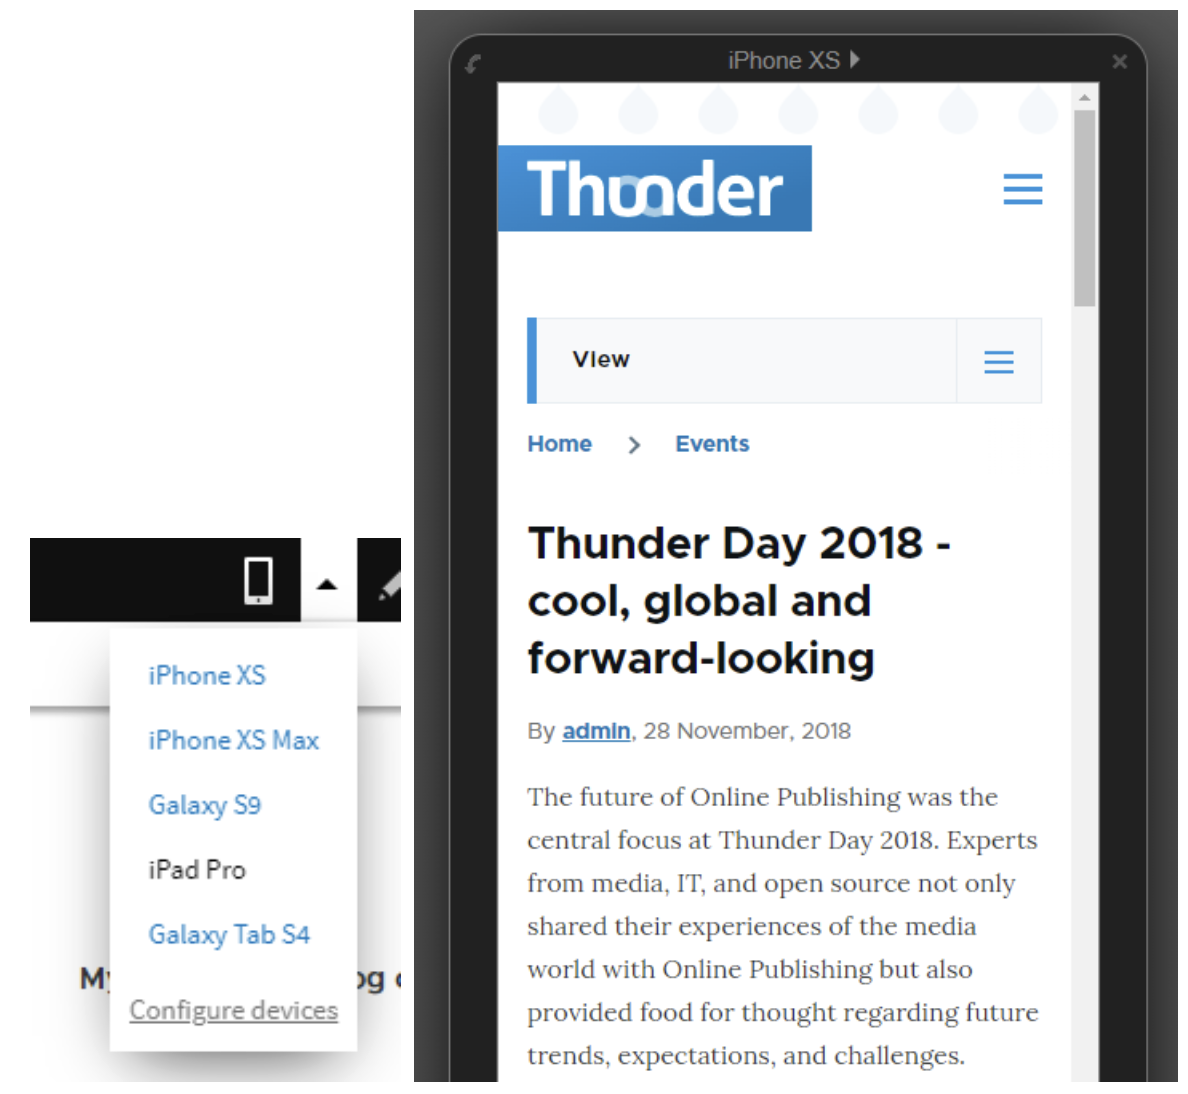 Podgląd mobilny w CMS Editor pozwala zobaczyć, jak artykuł wyświetla się na smartfonie i tablecie.